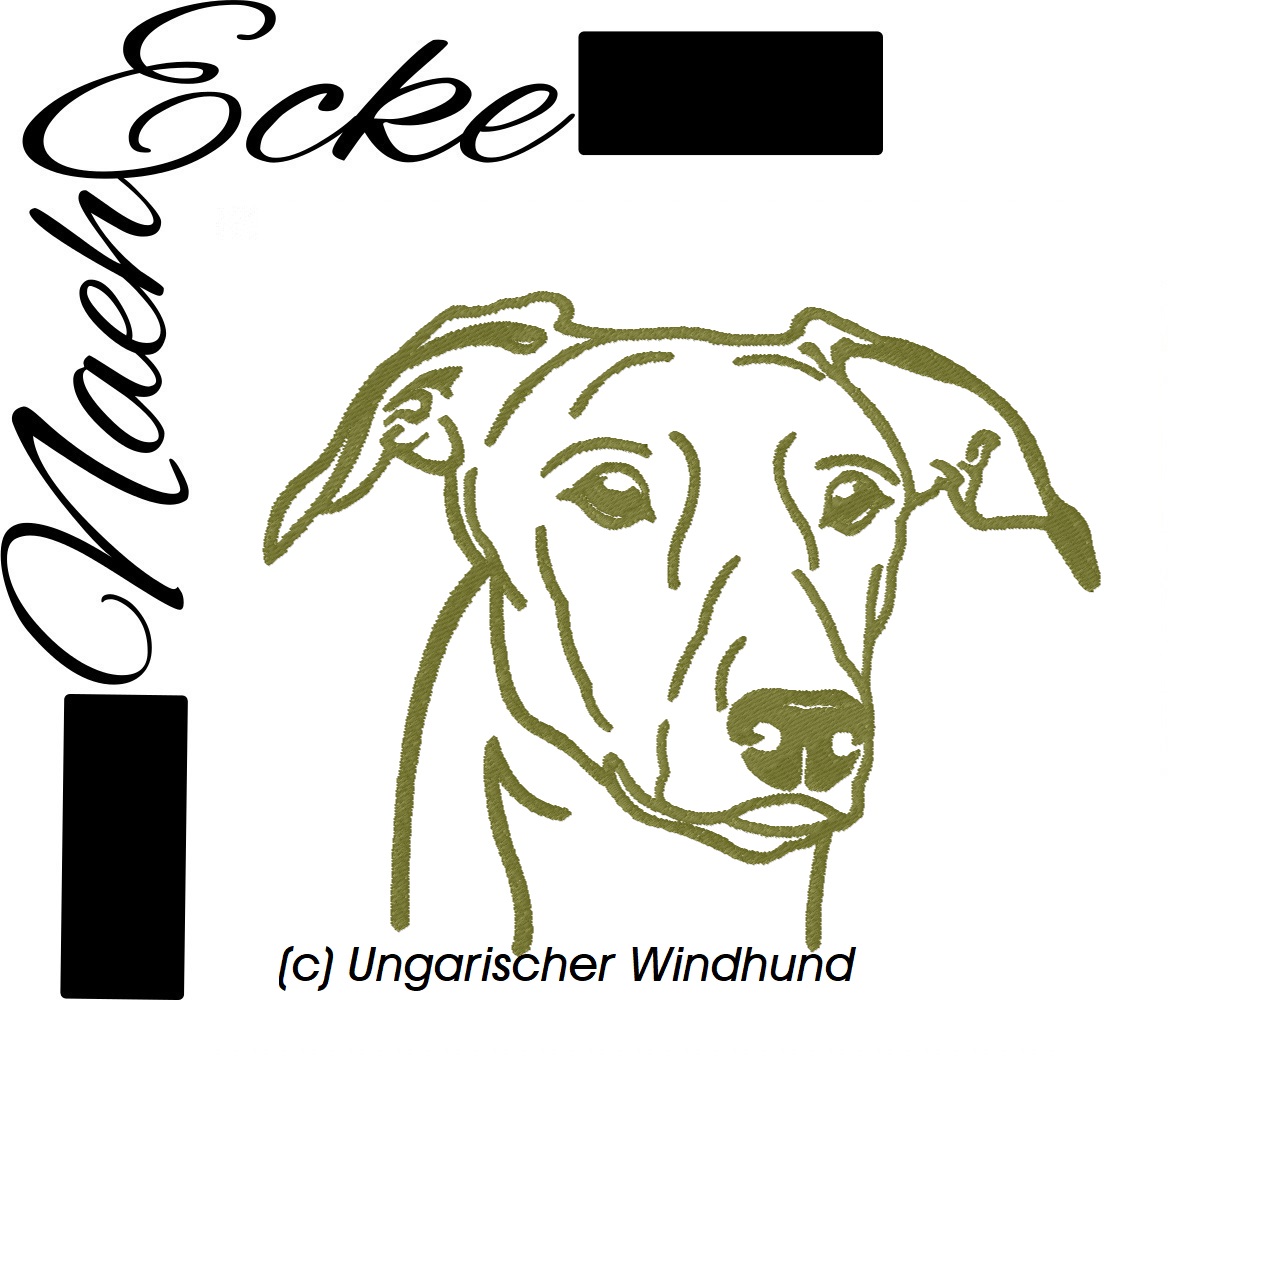 Ungarischer Windhund